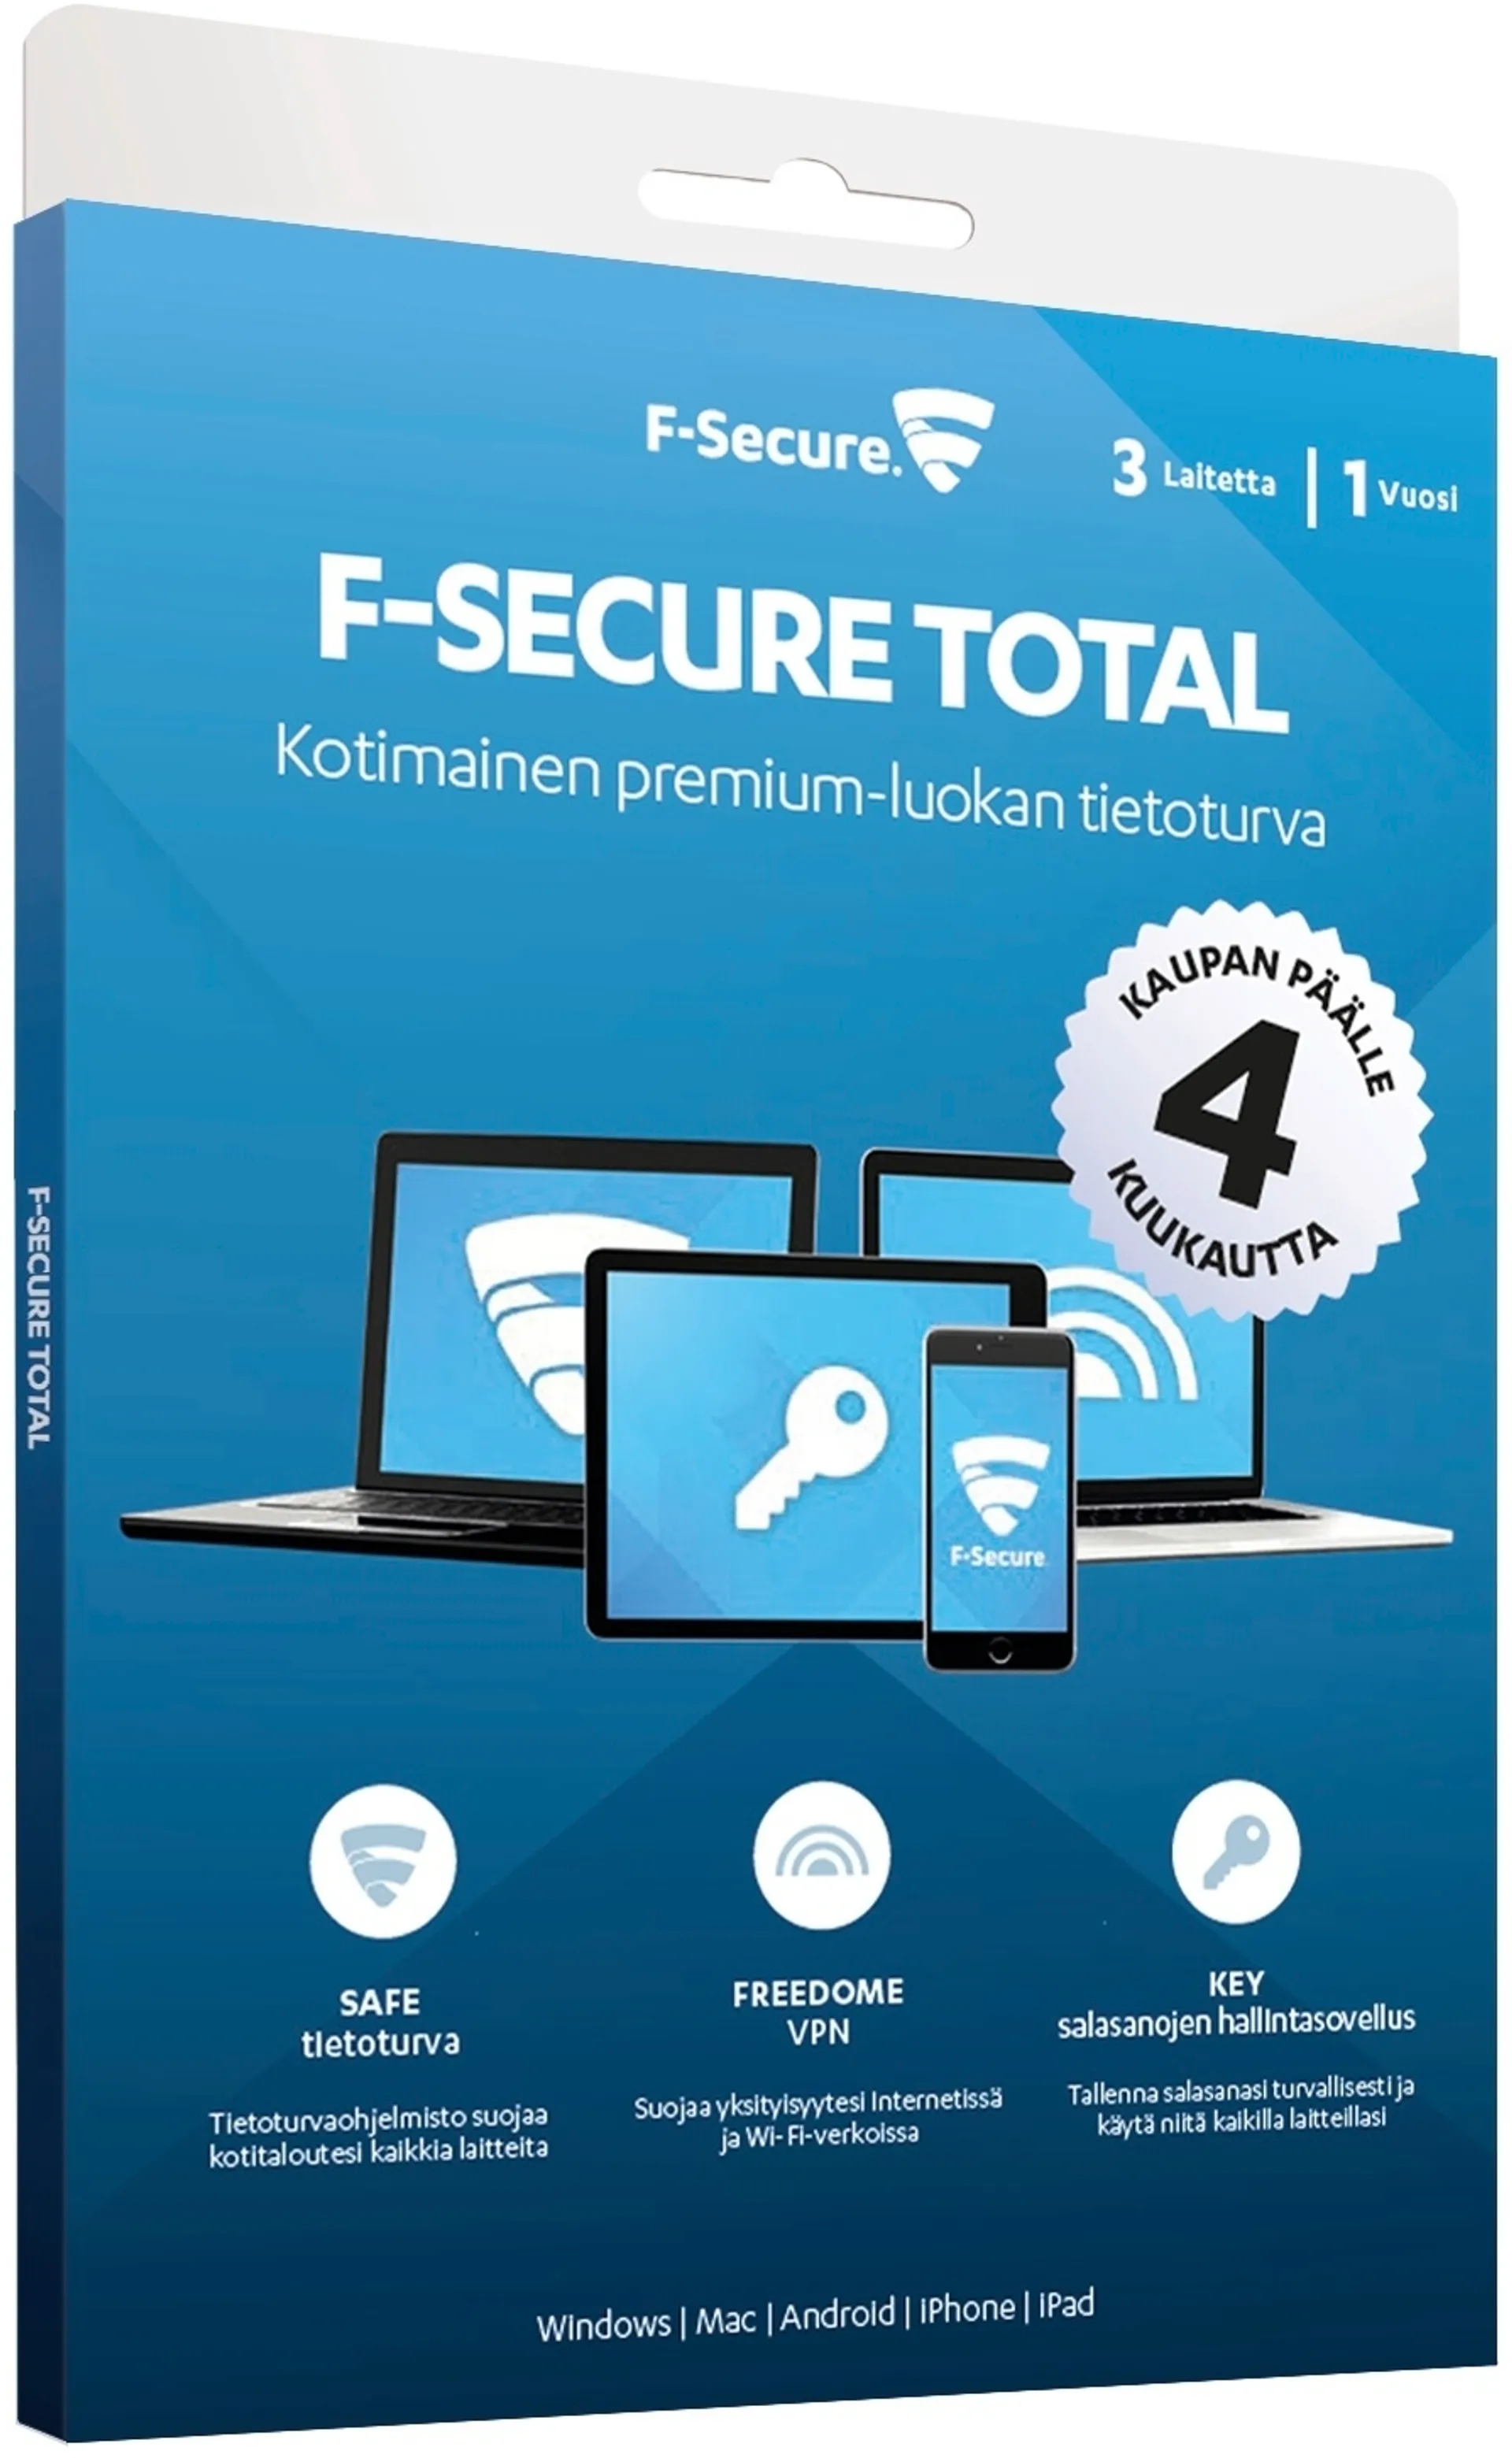 F-Secure TOTAL 1 vuosi 3 laitetta + 4kk